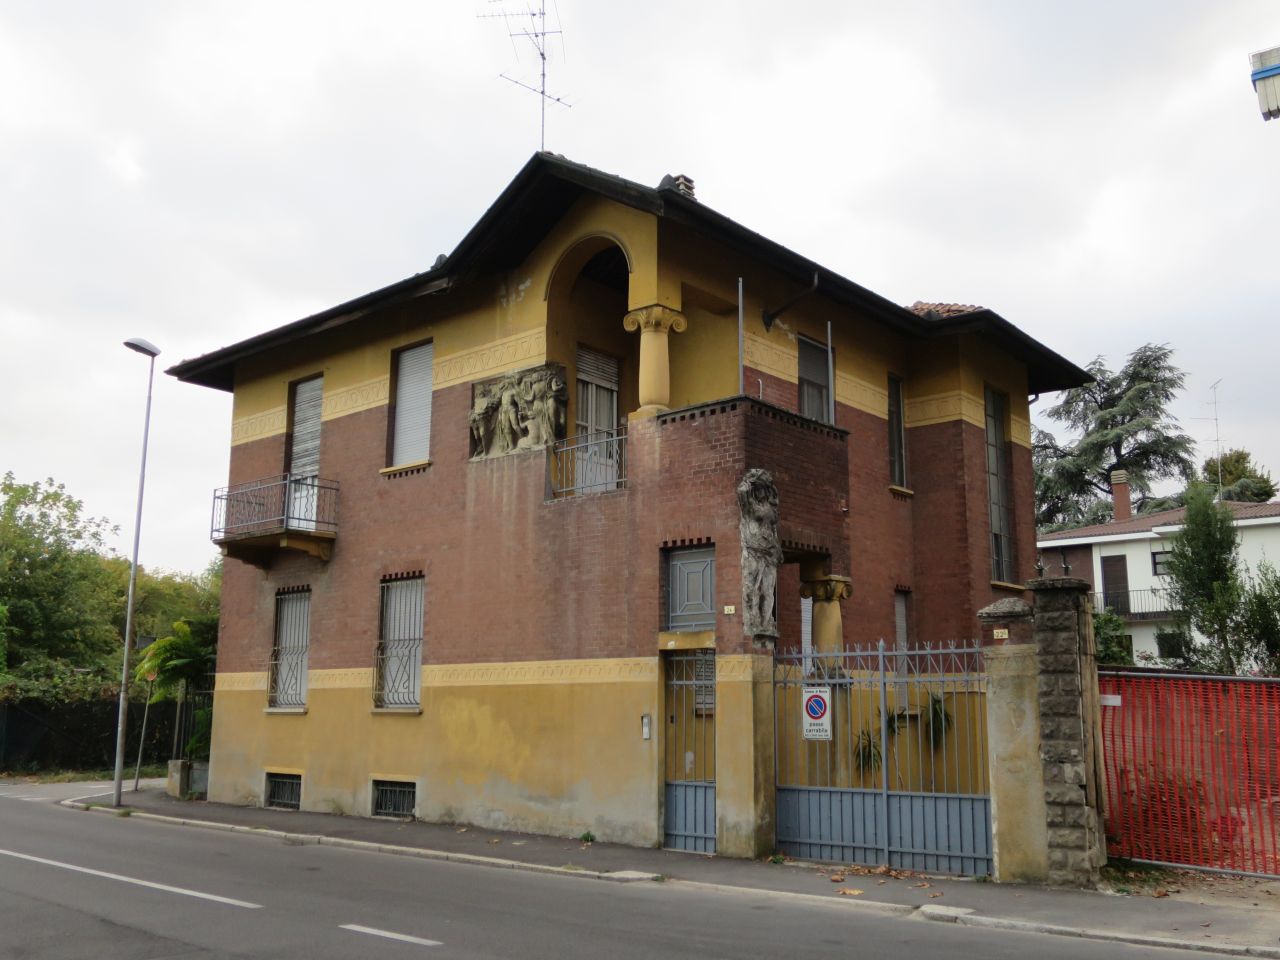 casa in viale Verdi 24 (casa) - Novara (NO)  (XX; XX; XX; XX; XX; XX; XX; XX; XX; XX; XX; XX)